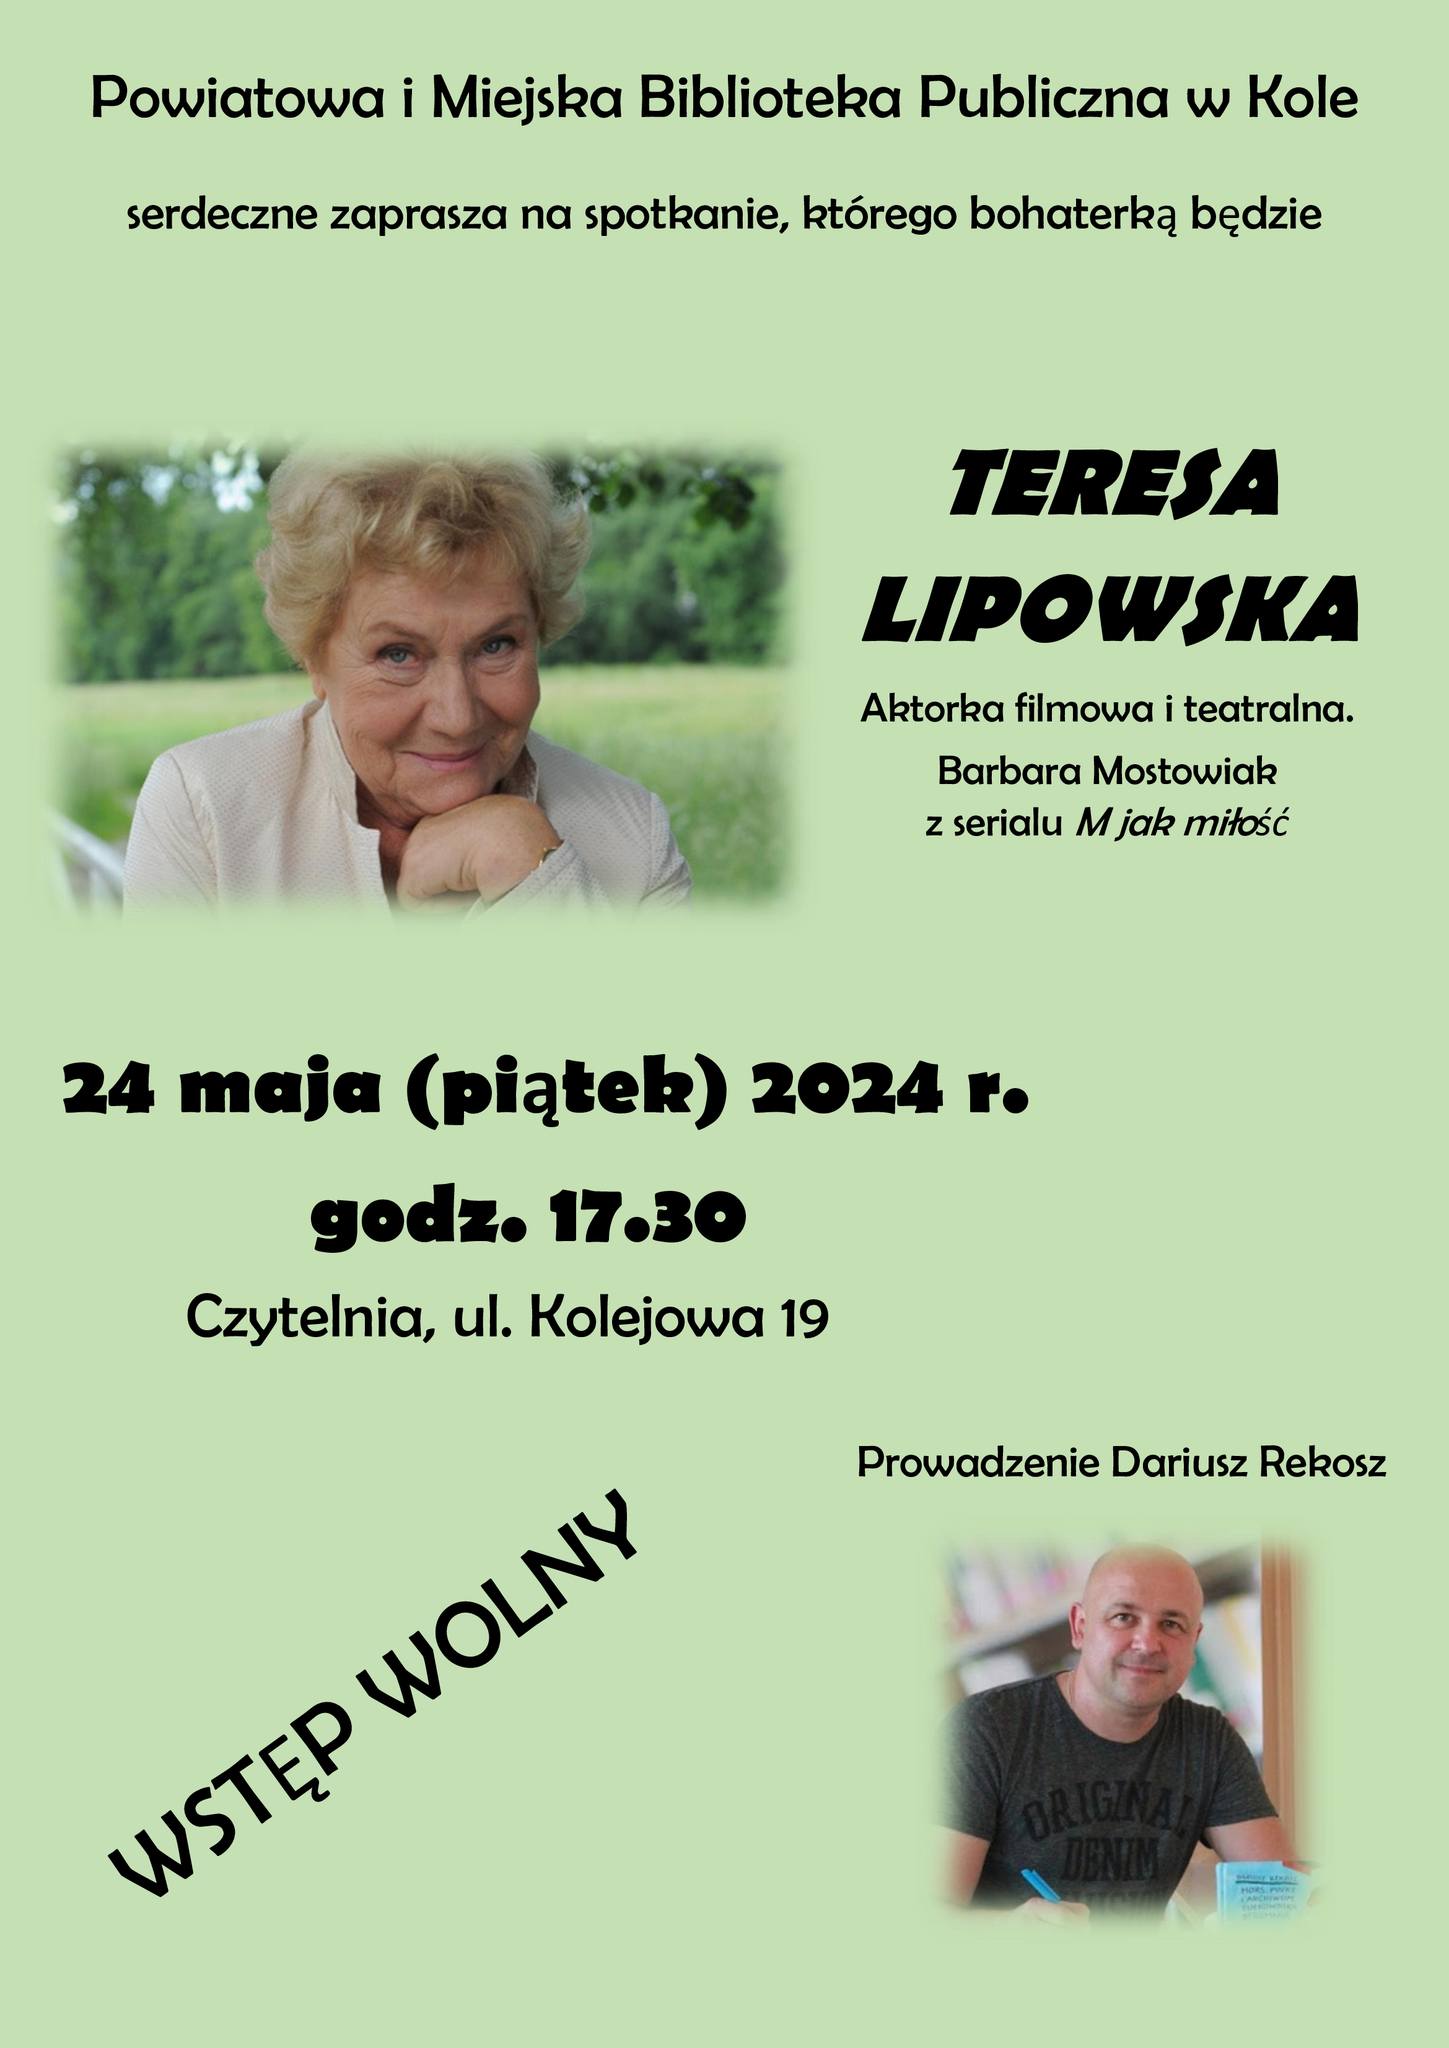 Zdjęcie: UWAGA!!! Zmienia się miejsce spotkania z aktorką filmową i teatralną Teresą Lipowską